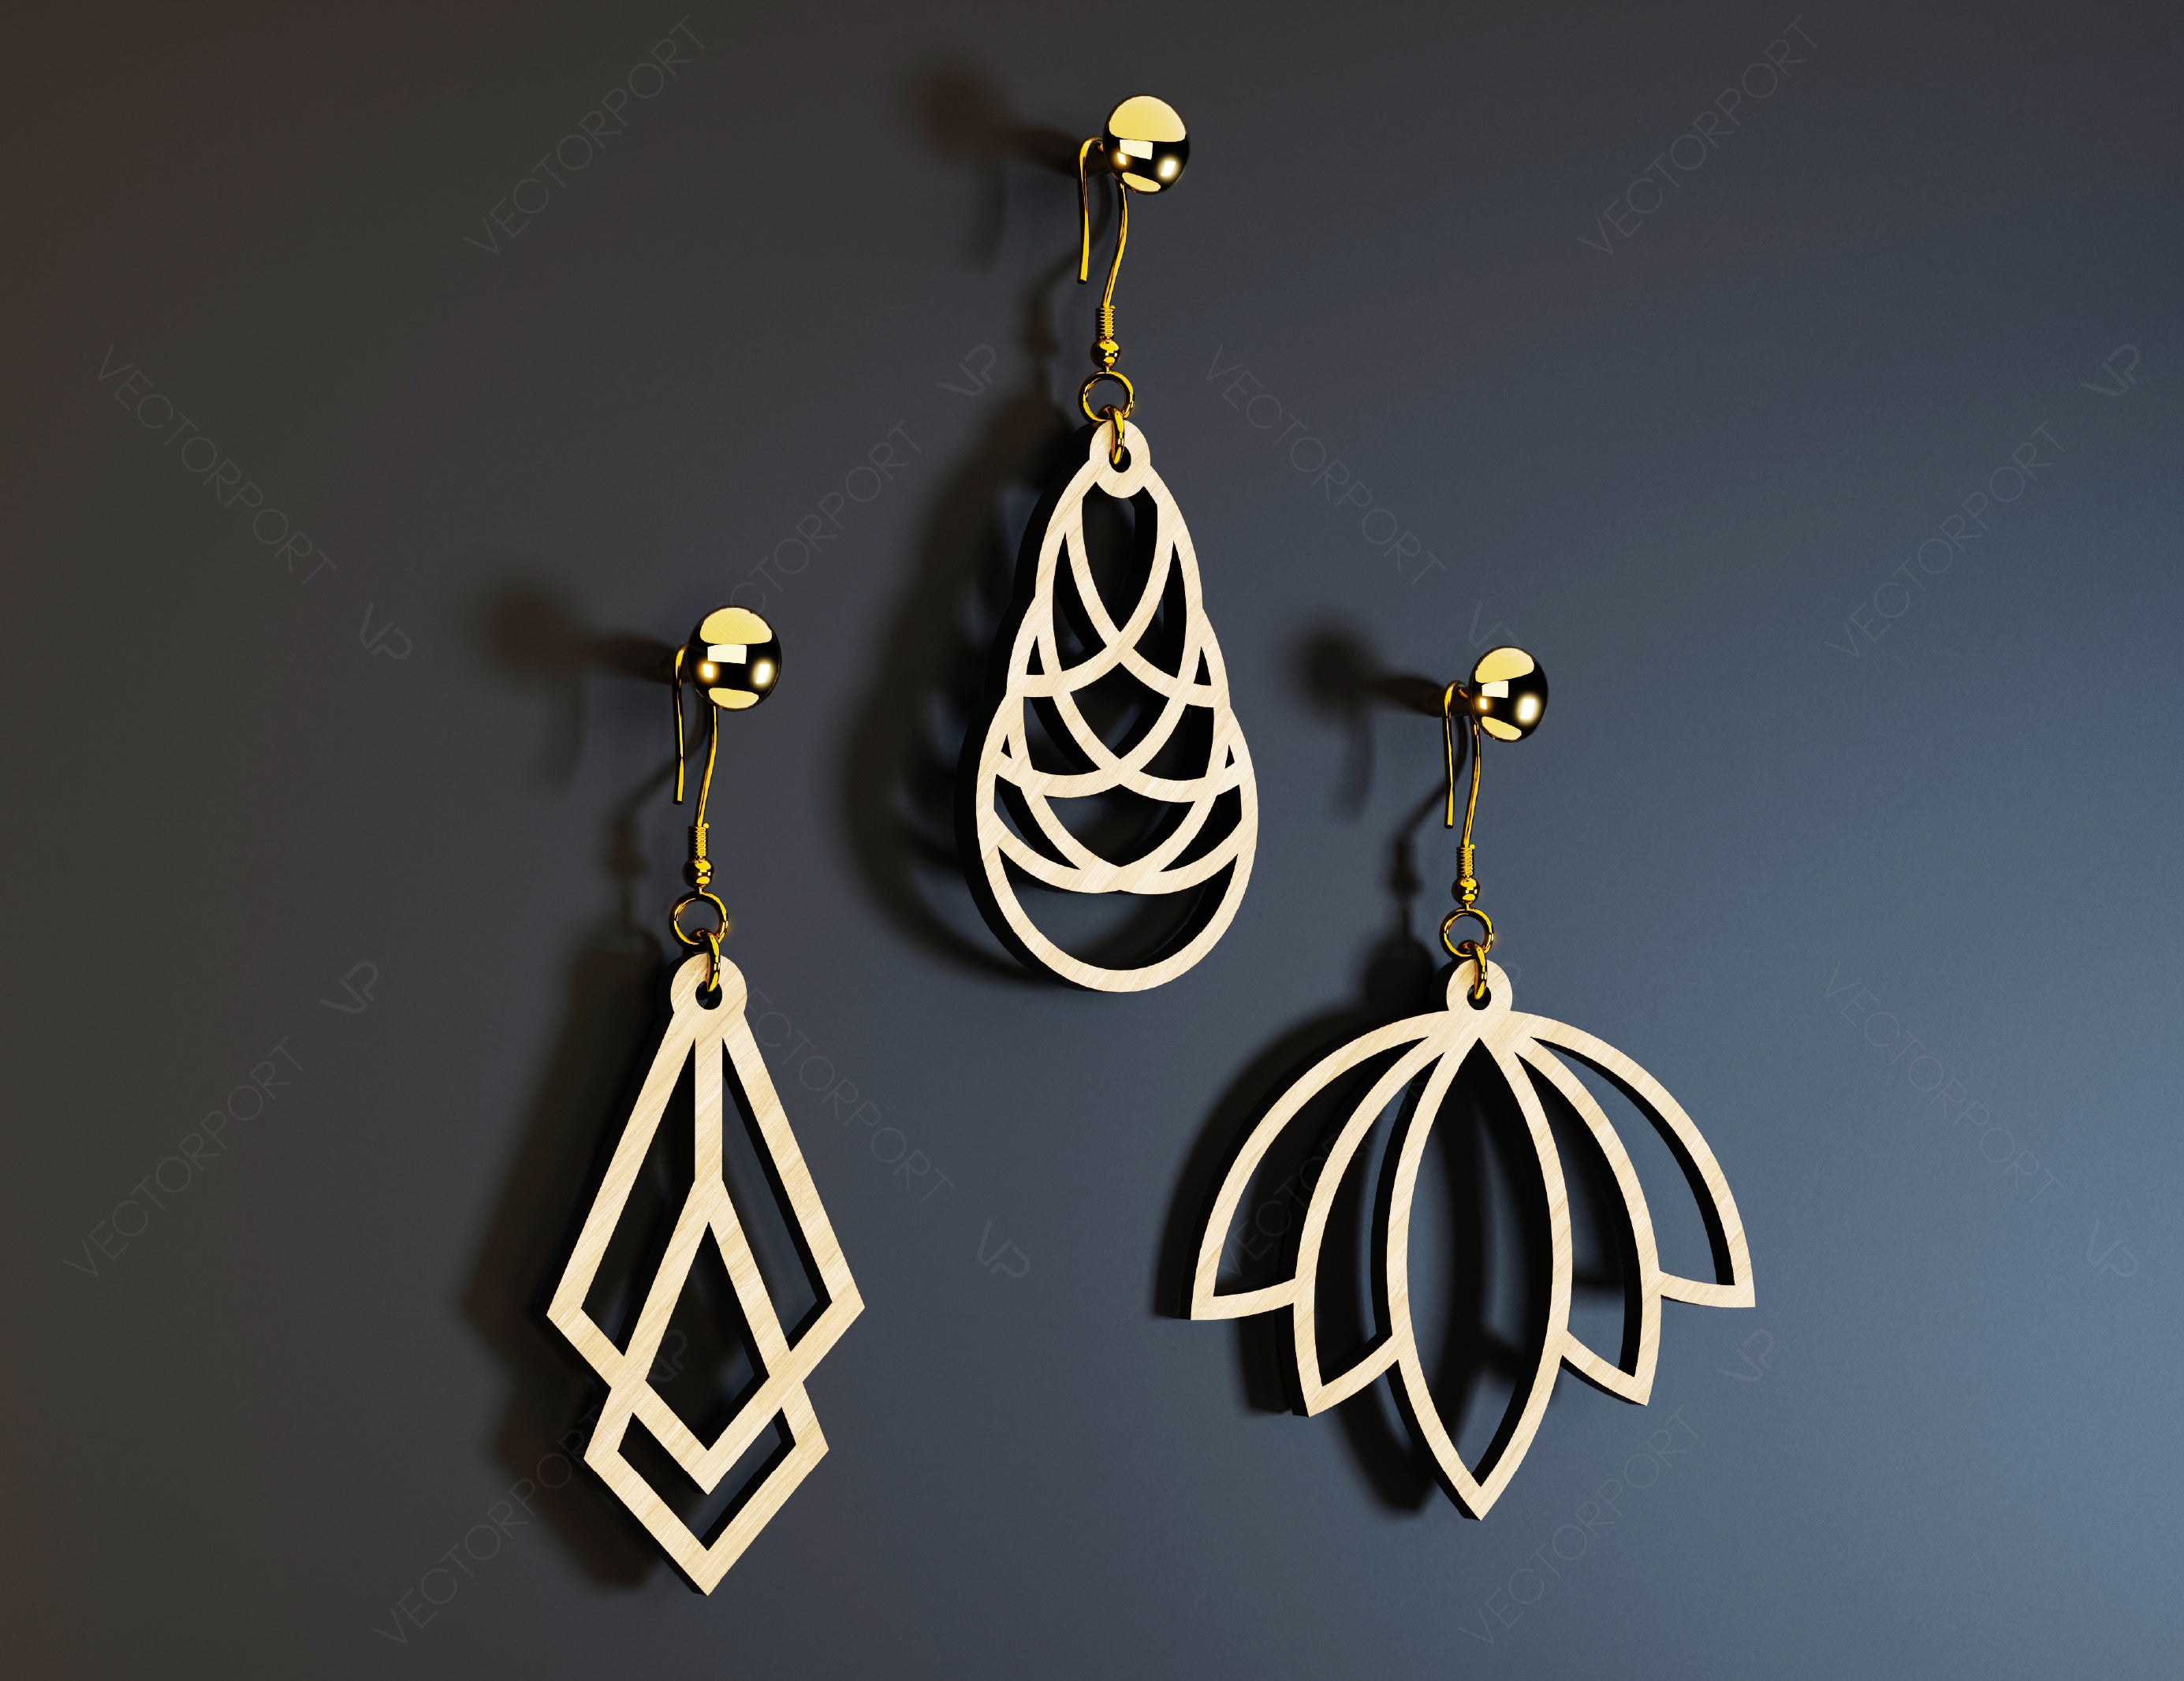 Modern Earrings Craft Jewelry Pendants Set Drop Laser cut Earrings SVG Template Silhouette Cut Files, Cricut Cut Files |#U018|